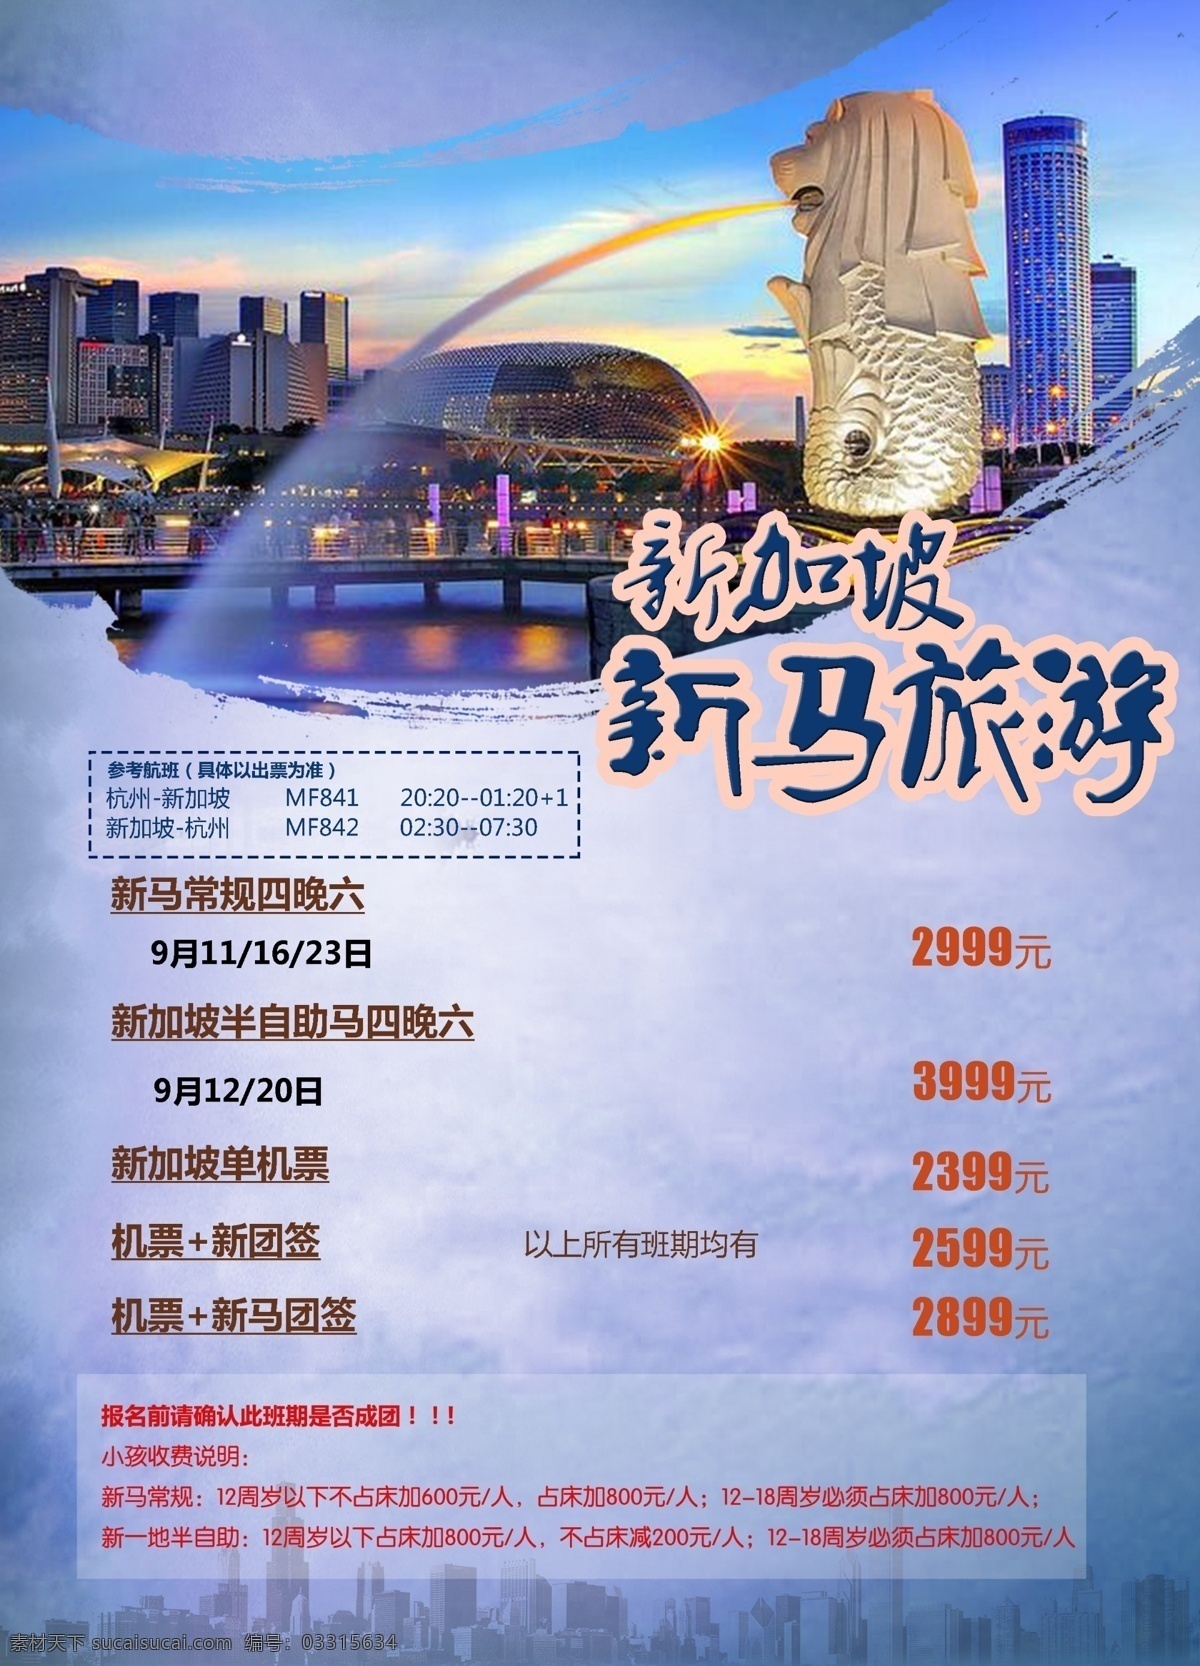 新马泰旅游 新加坡 马来西亚 泰国 曼谷 旅游 海报 旅游海报 蓝色